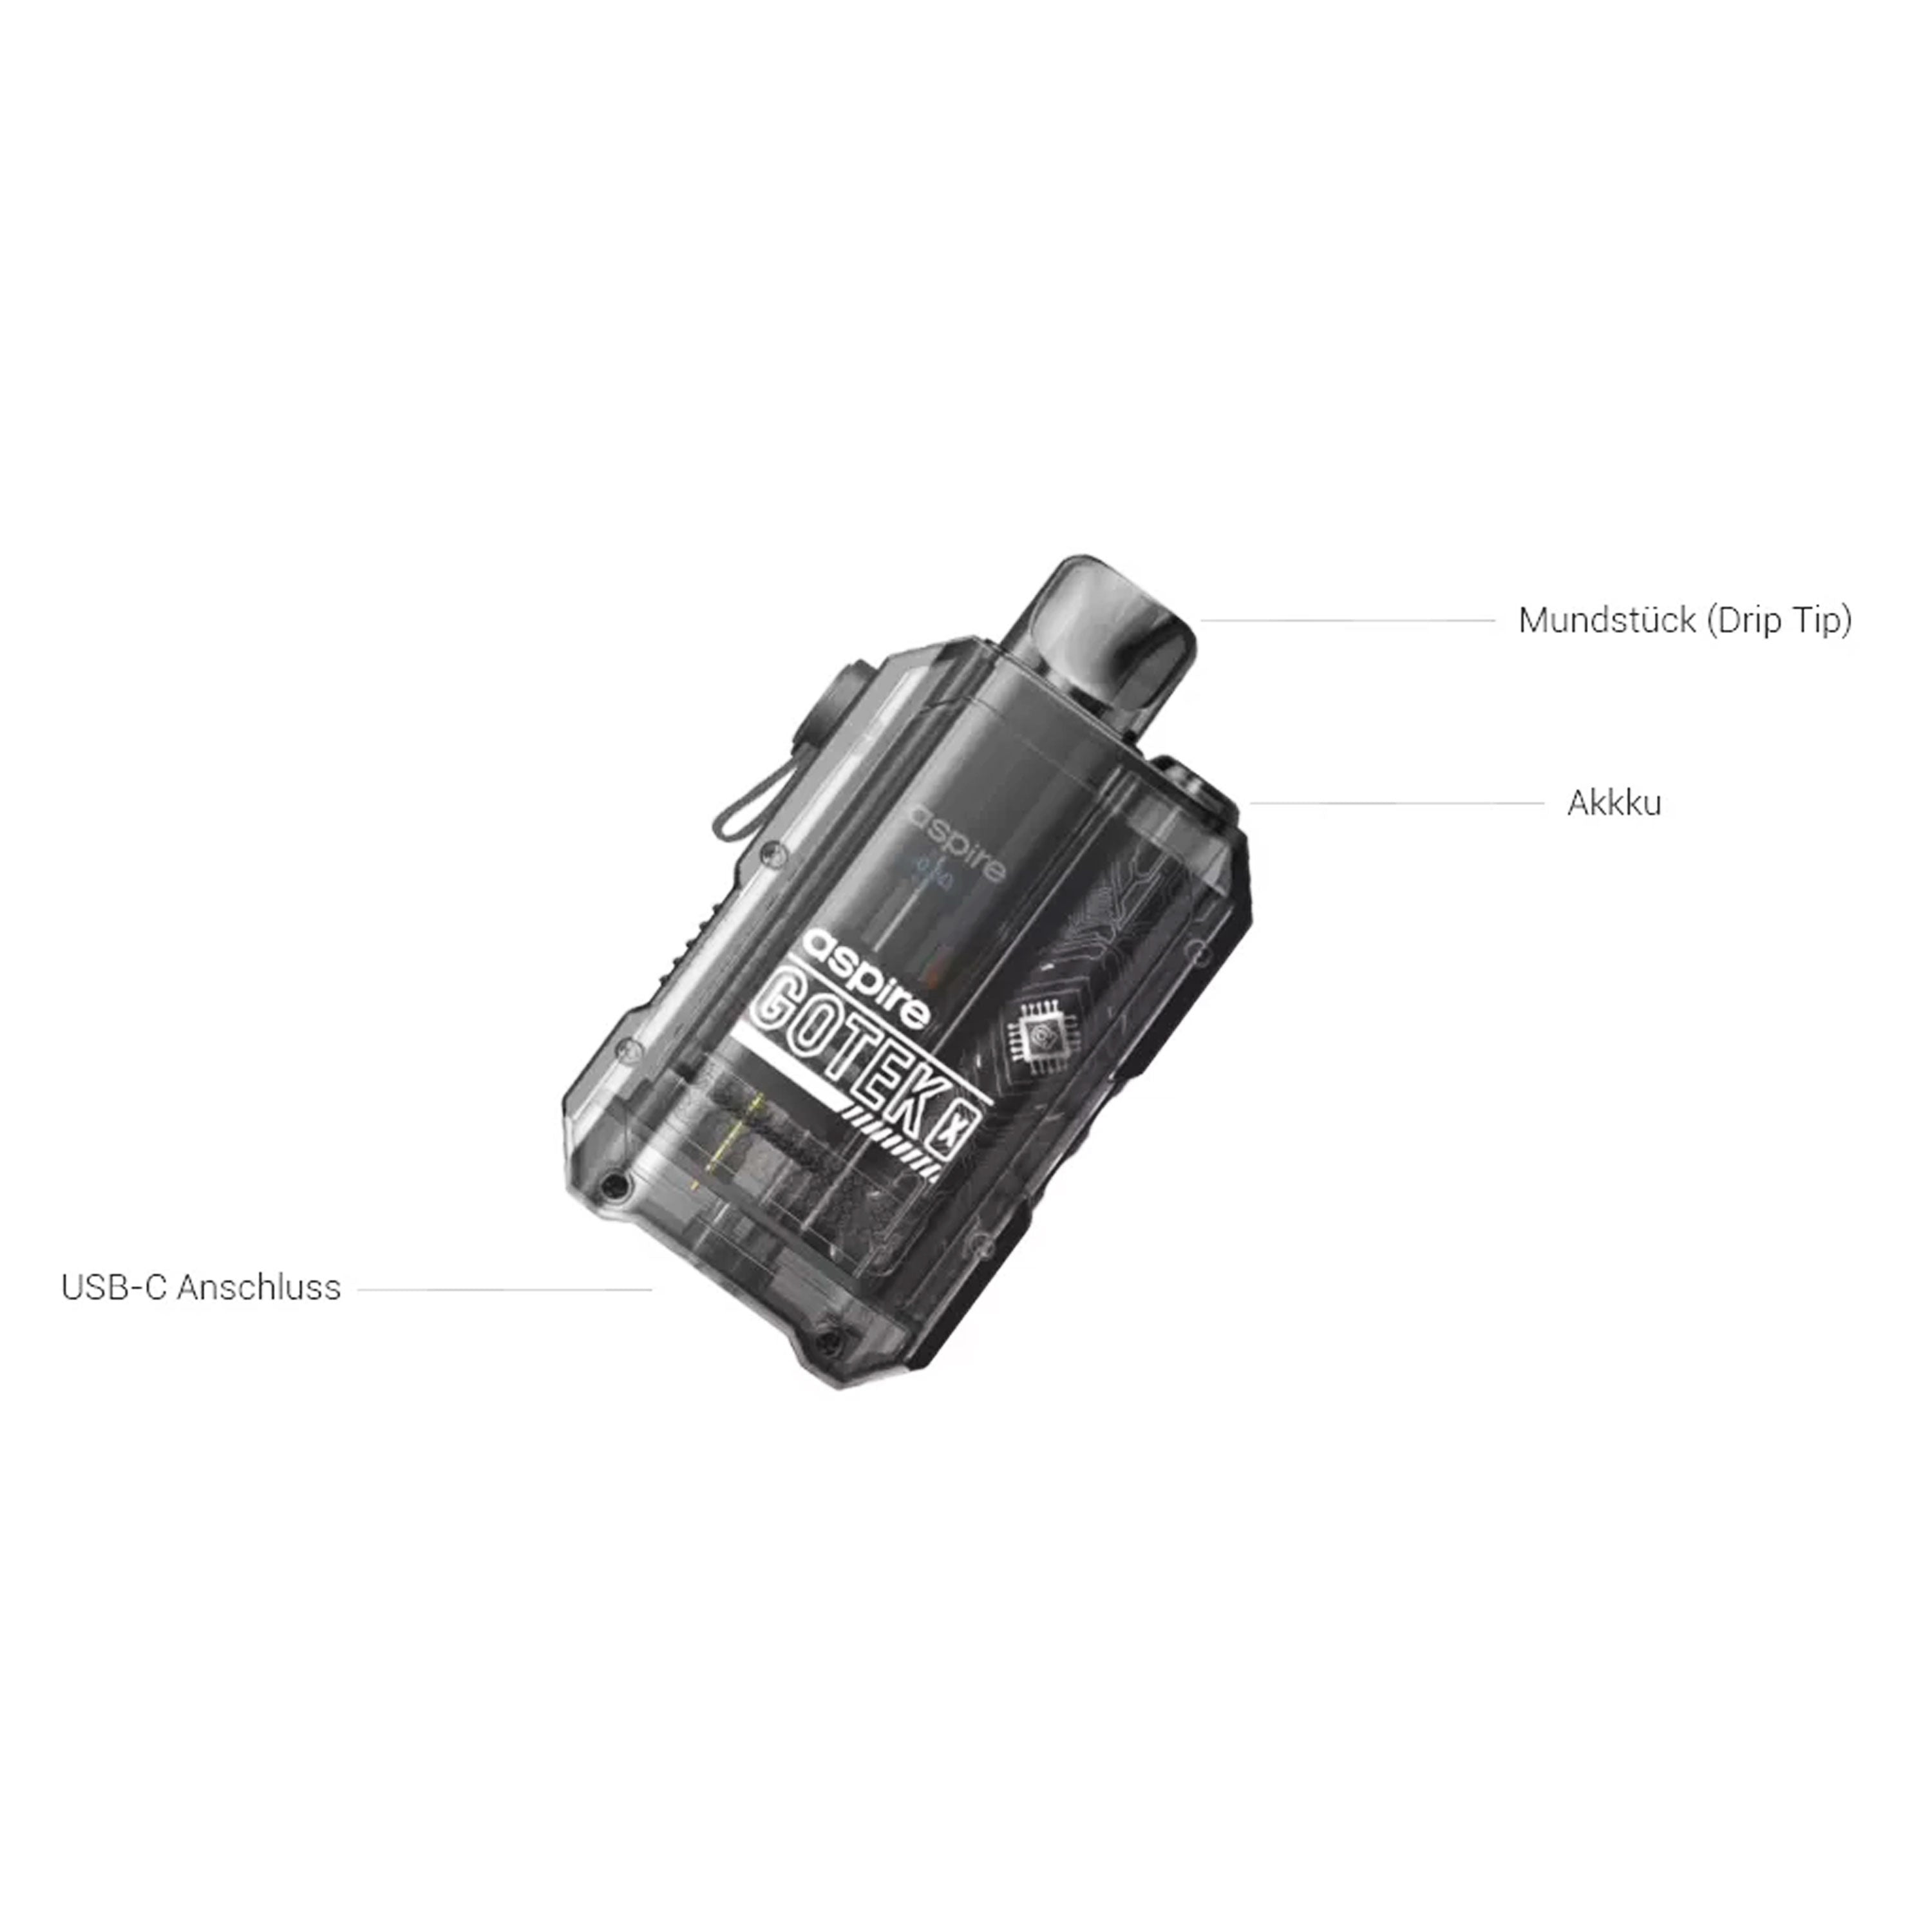 Aspire - Gotek X Kit (4.5 ml) 650 mAh - E-Zigarette